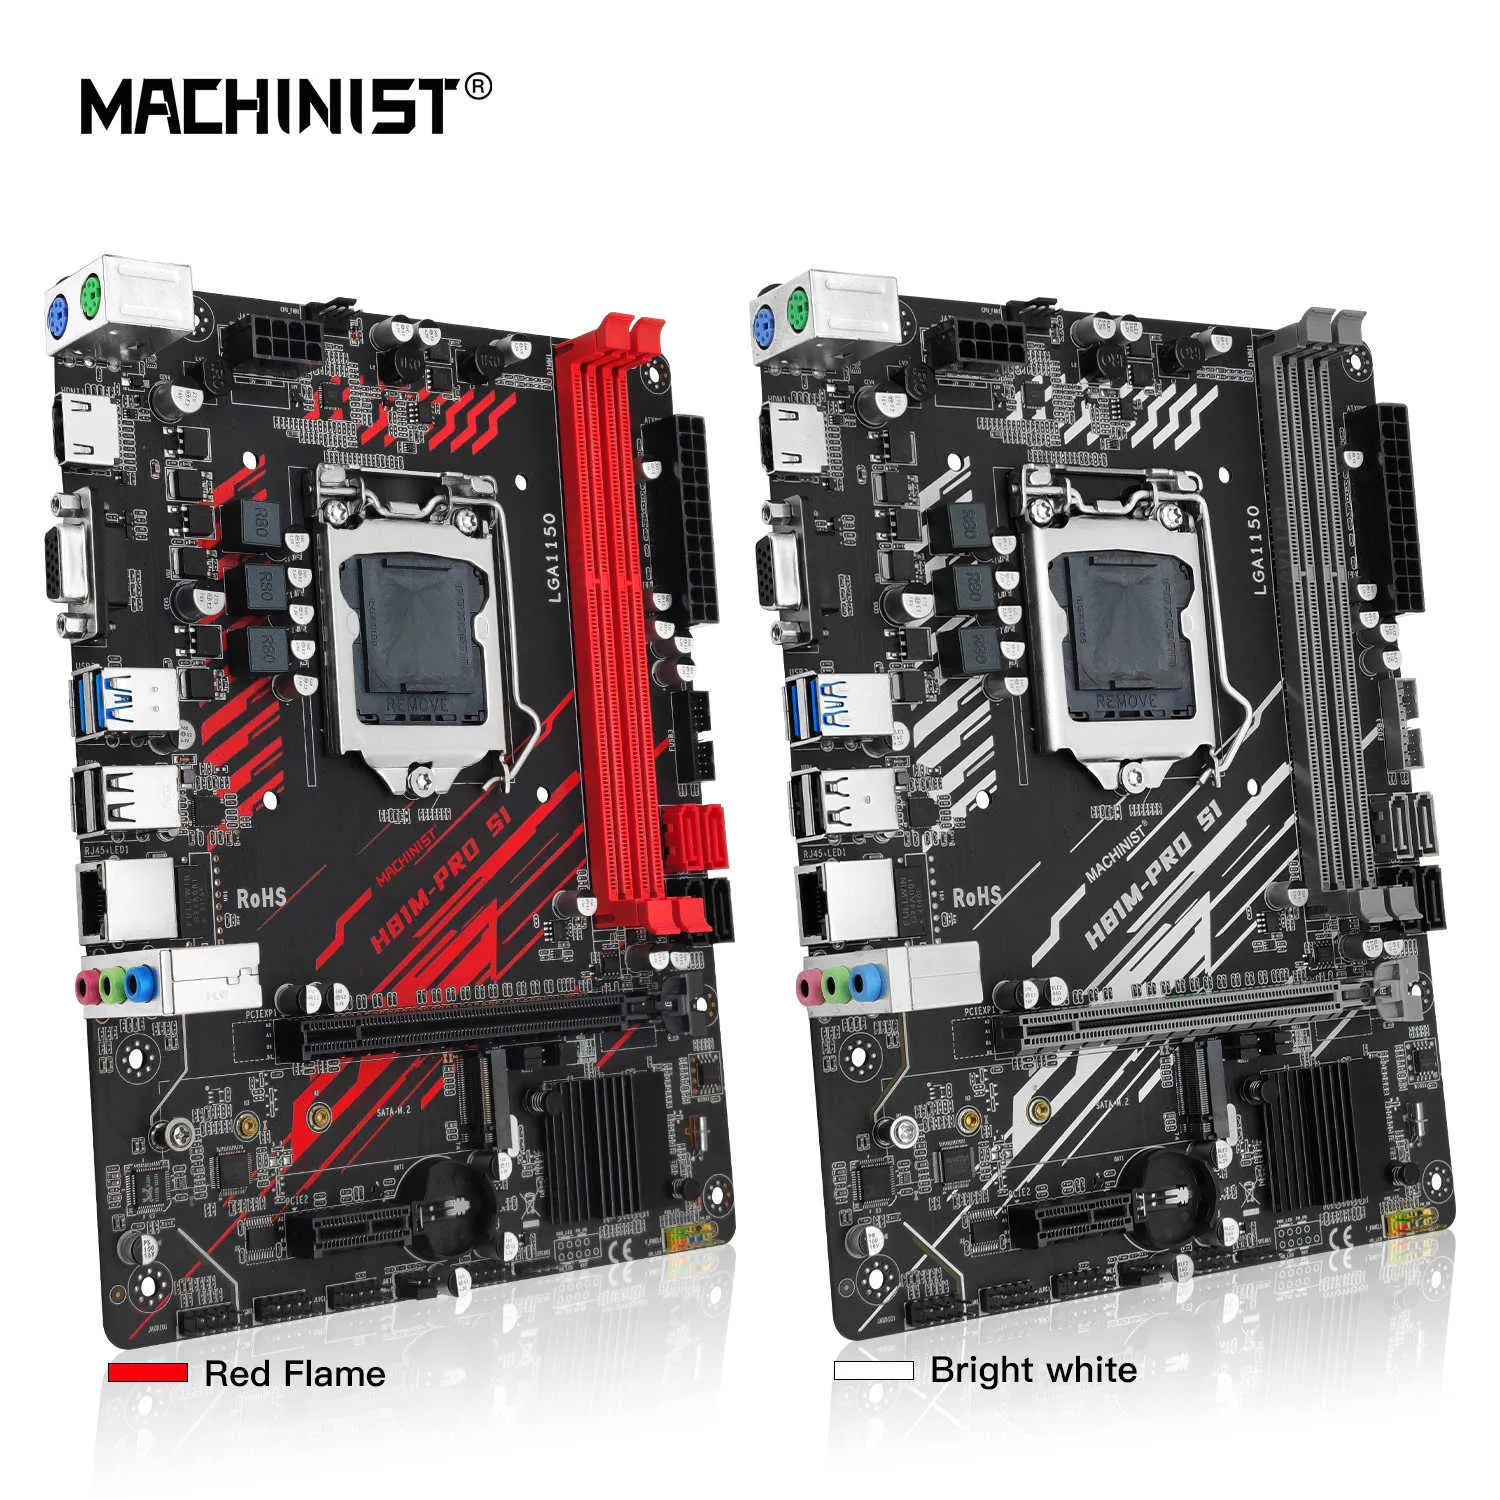 マシニストH81マザーボードLGA 1150 NGFF M.2スロットサポートI3 I5 I7/Xeon E3 V3プロセッサDDR3 RAM H81M-Pro S1メインボード